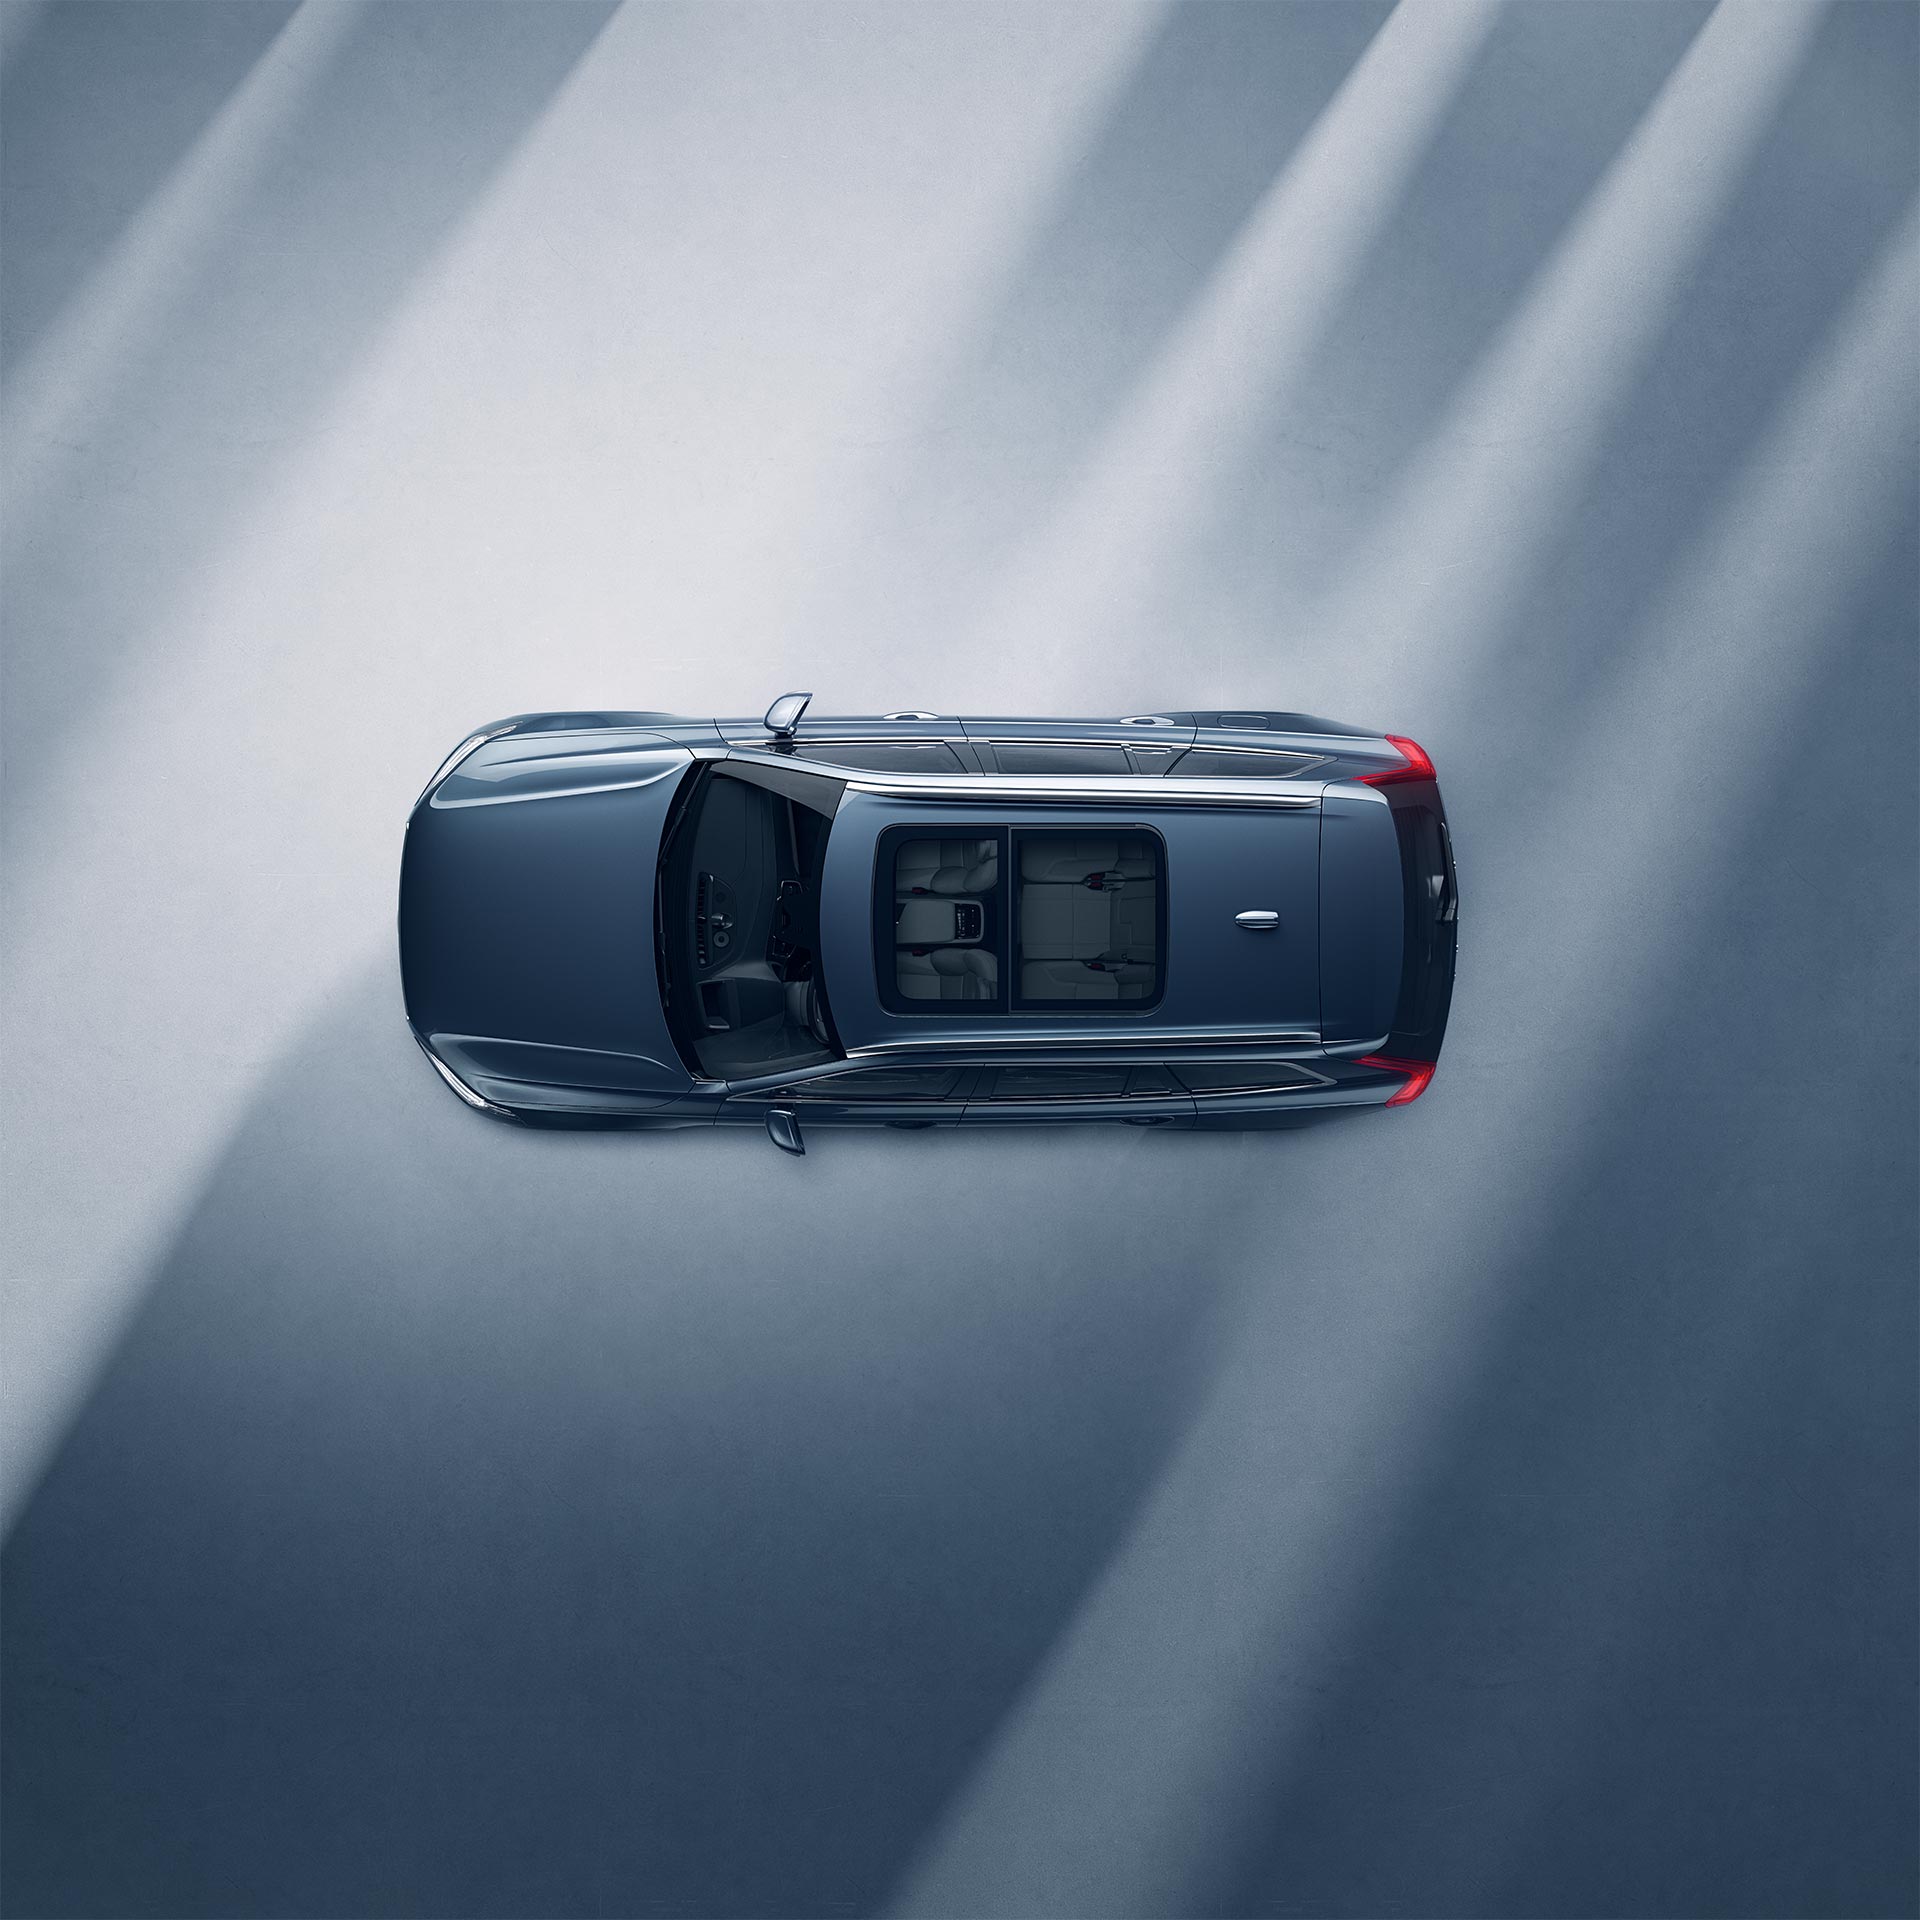 Vaade ülalt Volvo XC90 Recharge´i panoraamkatusele.